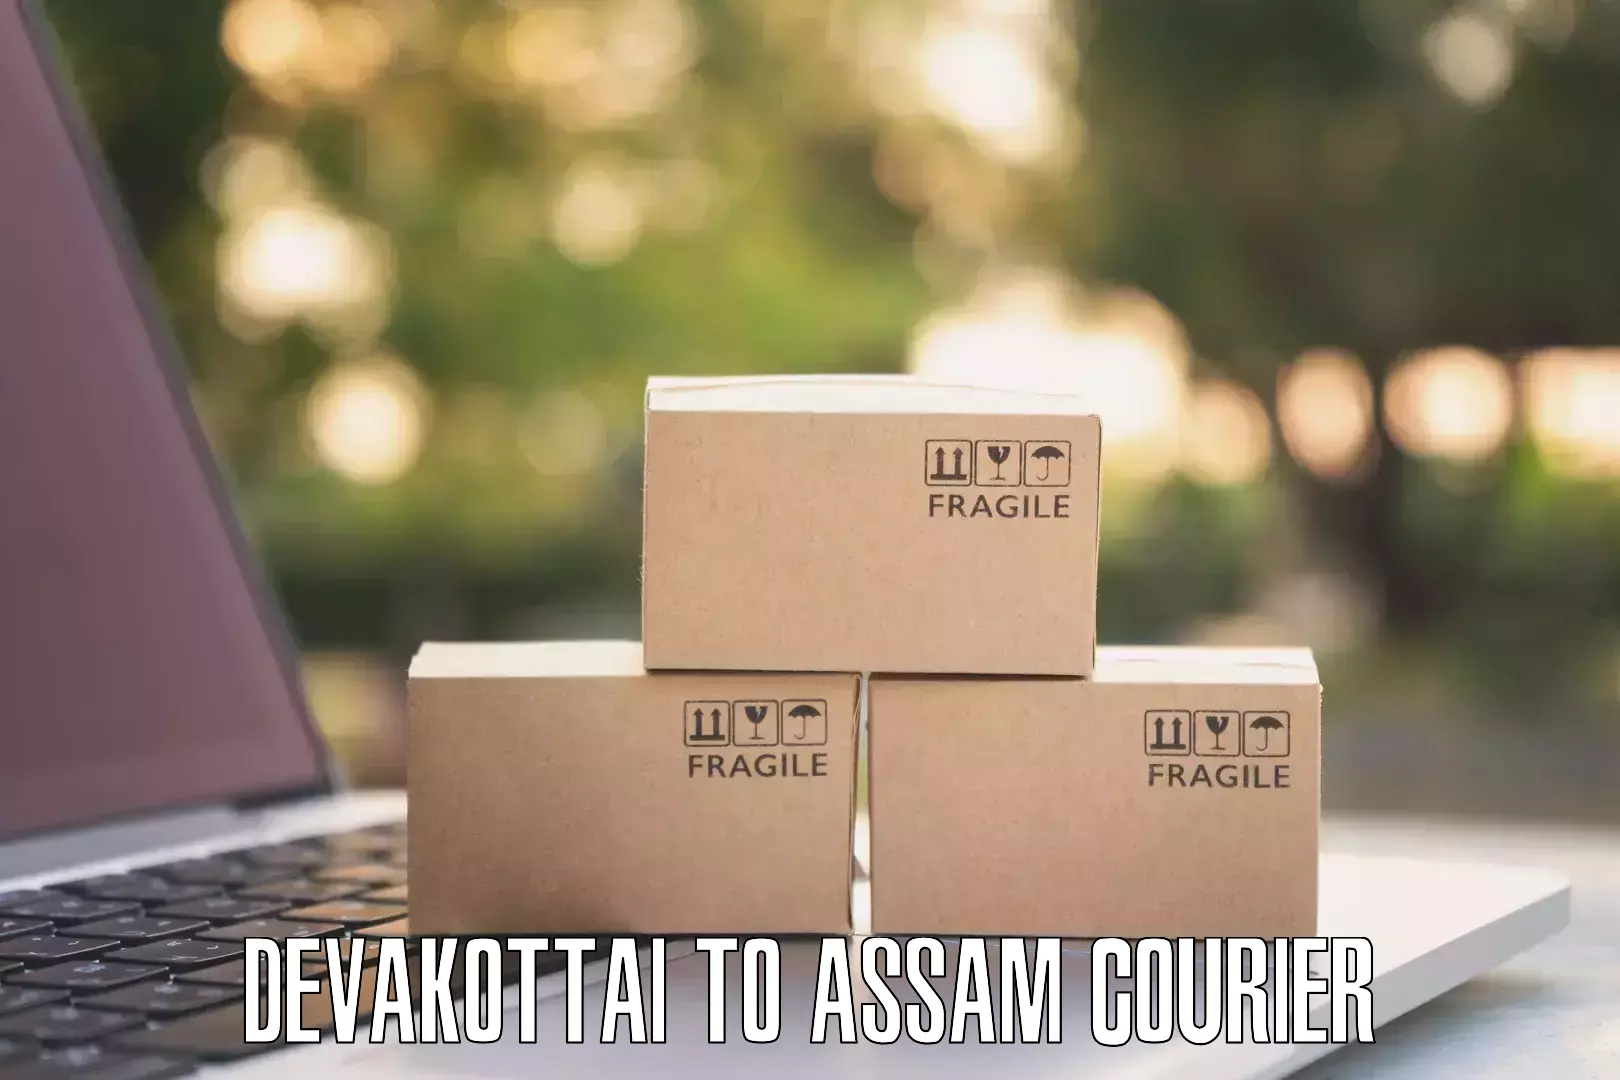 Efficient cargo services Devakottai to Assam